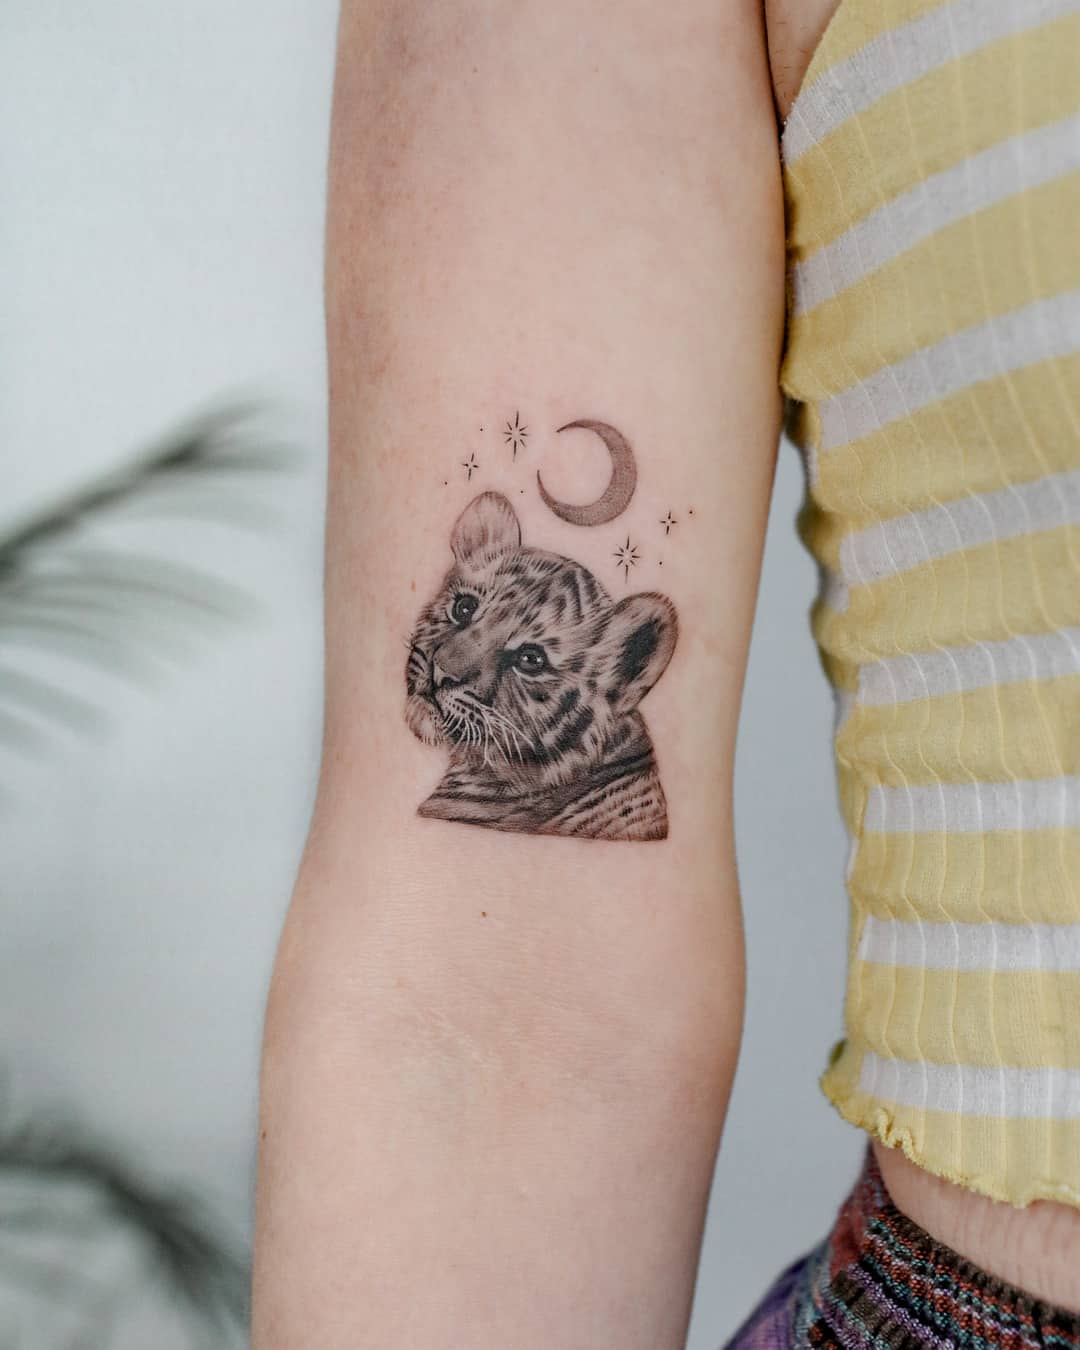 Tiger cub tattoo design by kyla rose tattoo